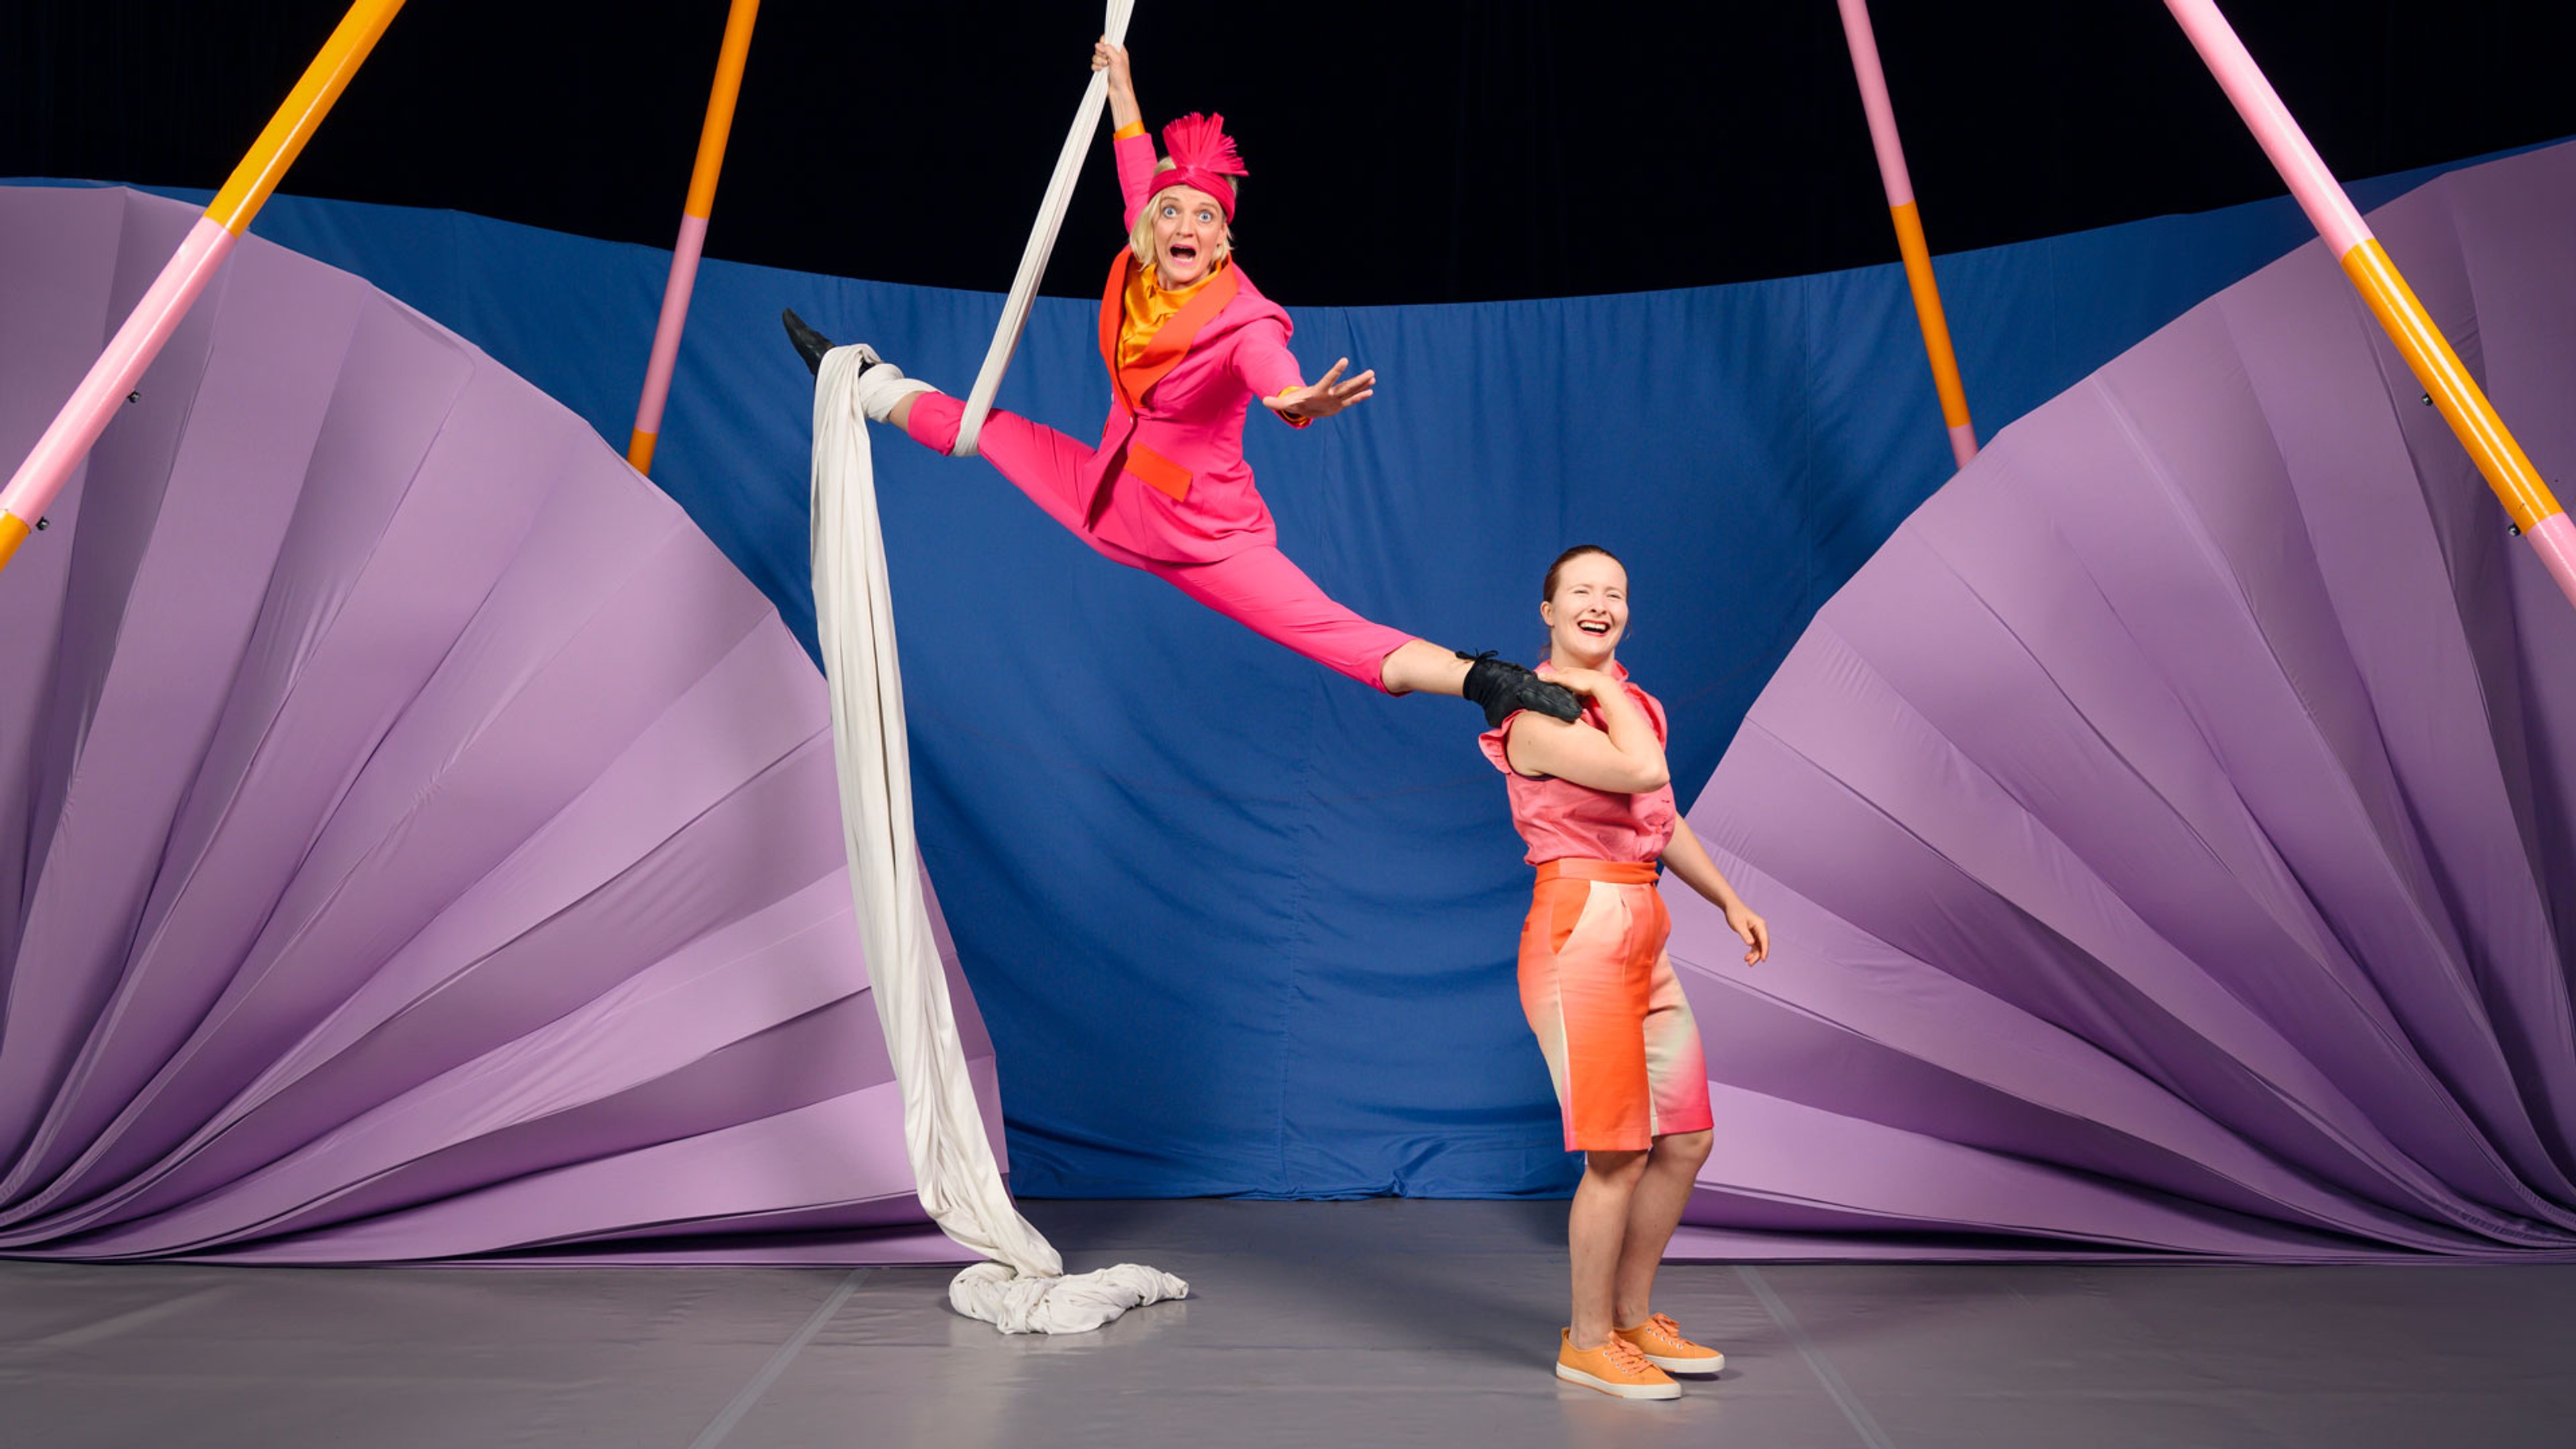 Två cirkusartister varav den ena hänger ned från taket framför en vägg i blått och lila